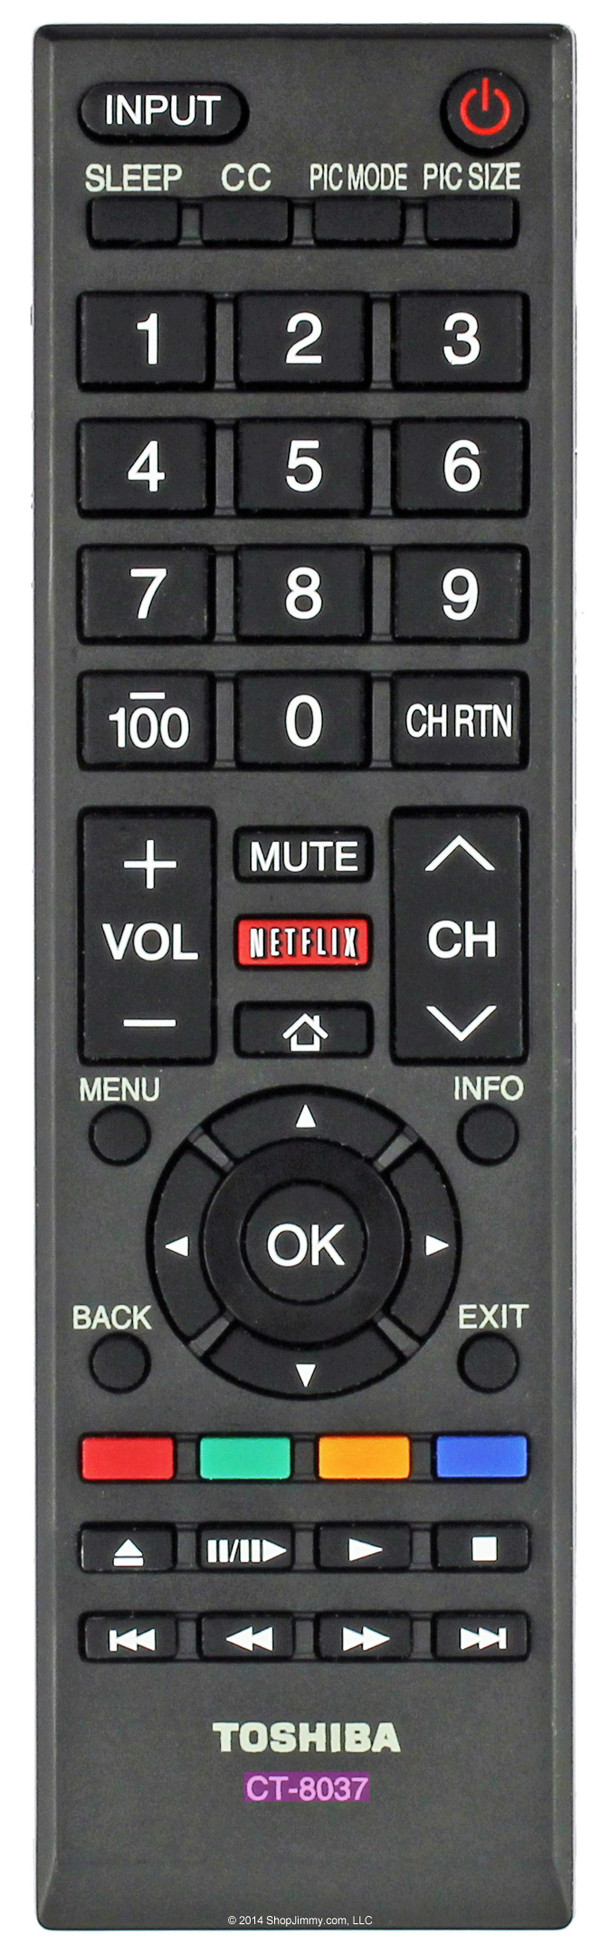 Toshiba CT-8037 Remote Control